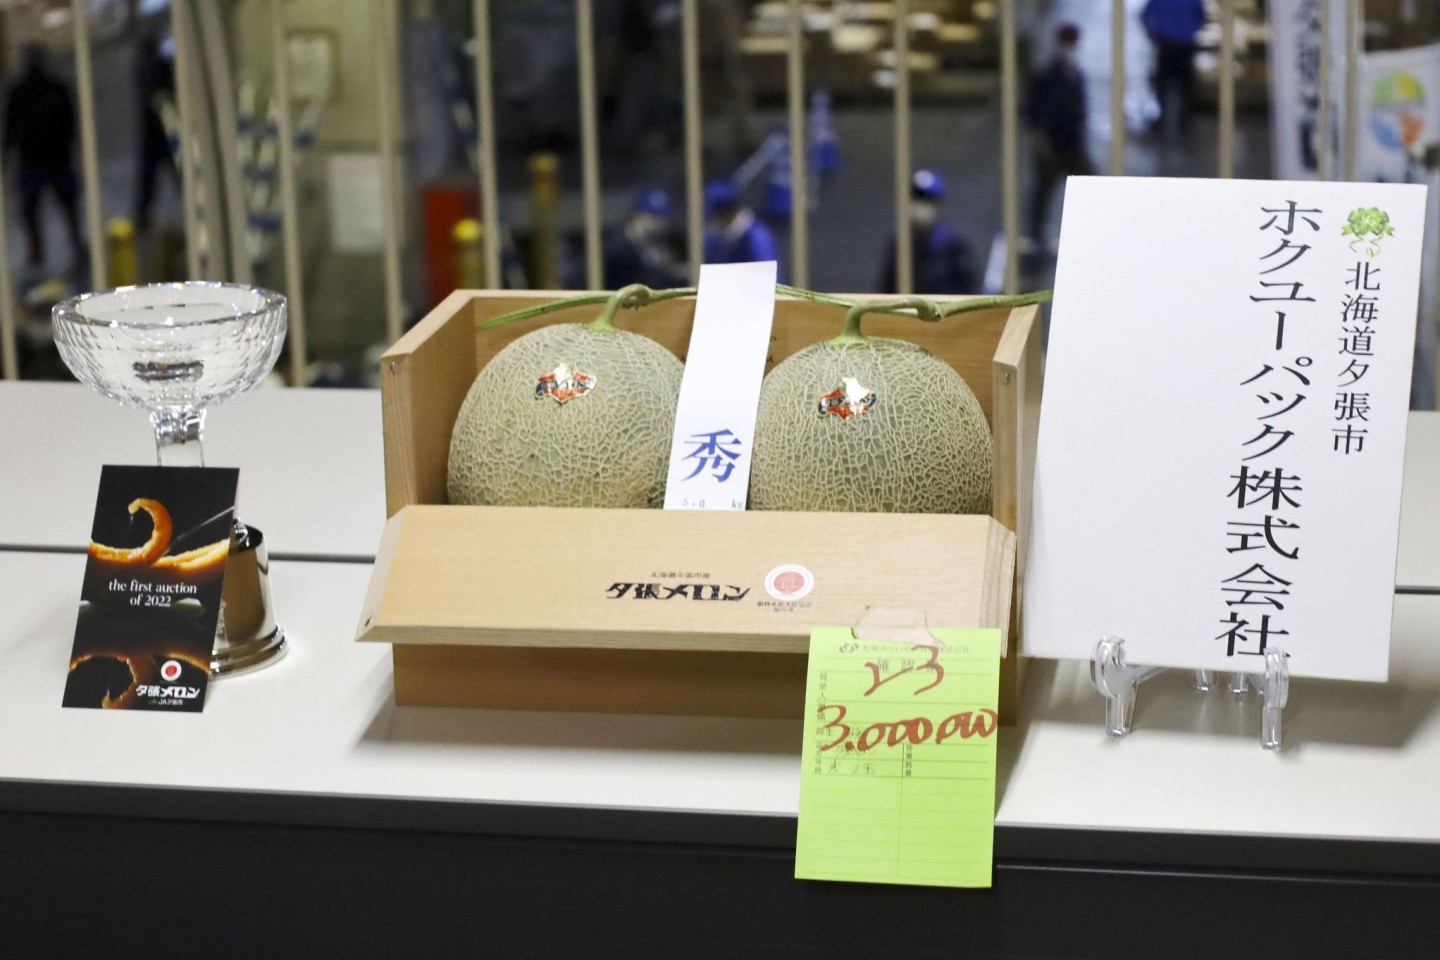 Ein Paar Yubari-Melonen erzielt bei der ersten Auktion des Jahres für das charakteristische Produkt der Hokkaido-Stadt Yubari einen Preis von 3 Millionen Yen (etwa 22.000 Euro).